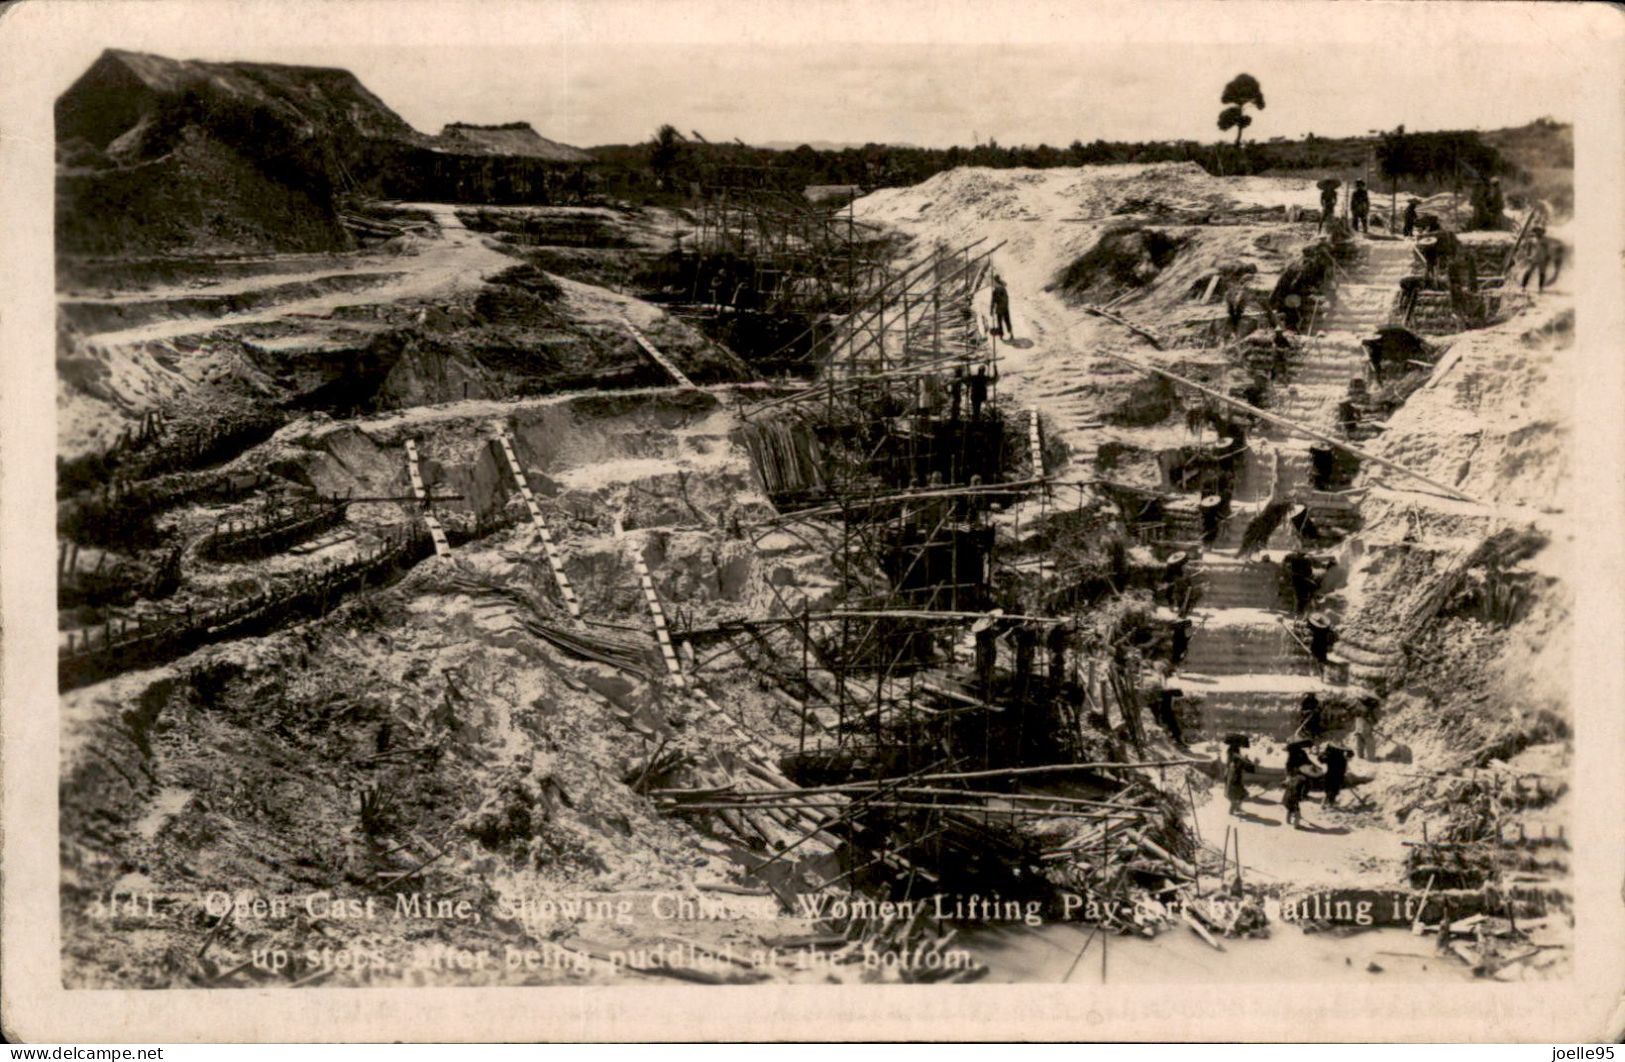 Maleisië - Malaya - Malaysia - Tine Mine - 1910 - Malaysia